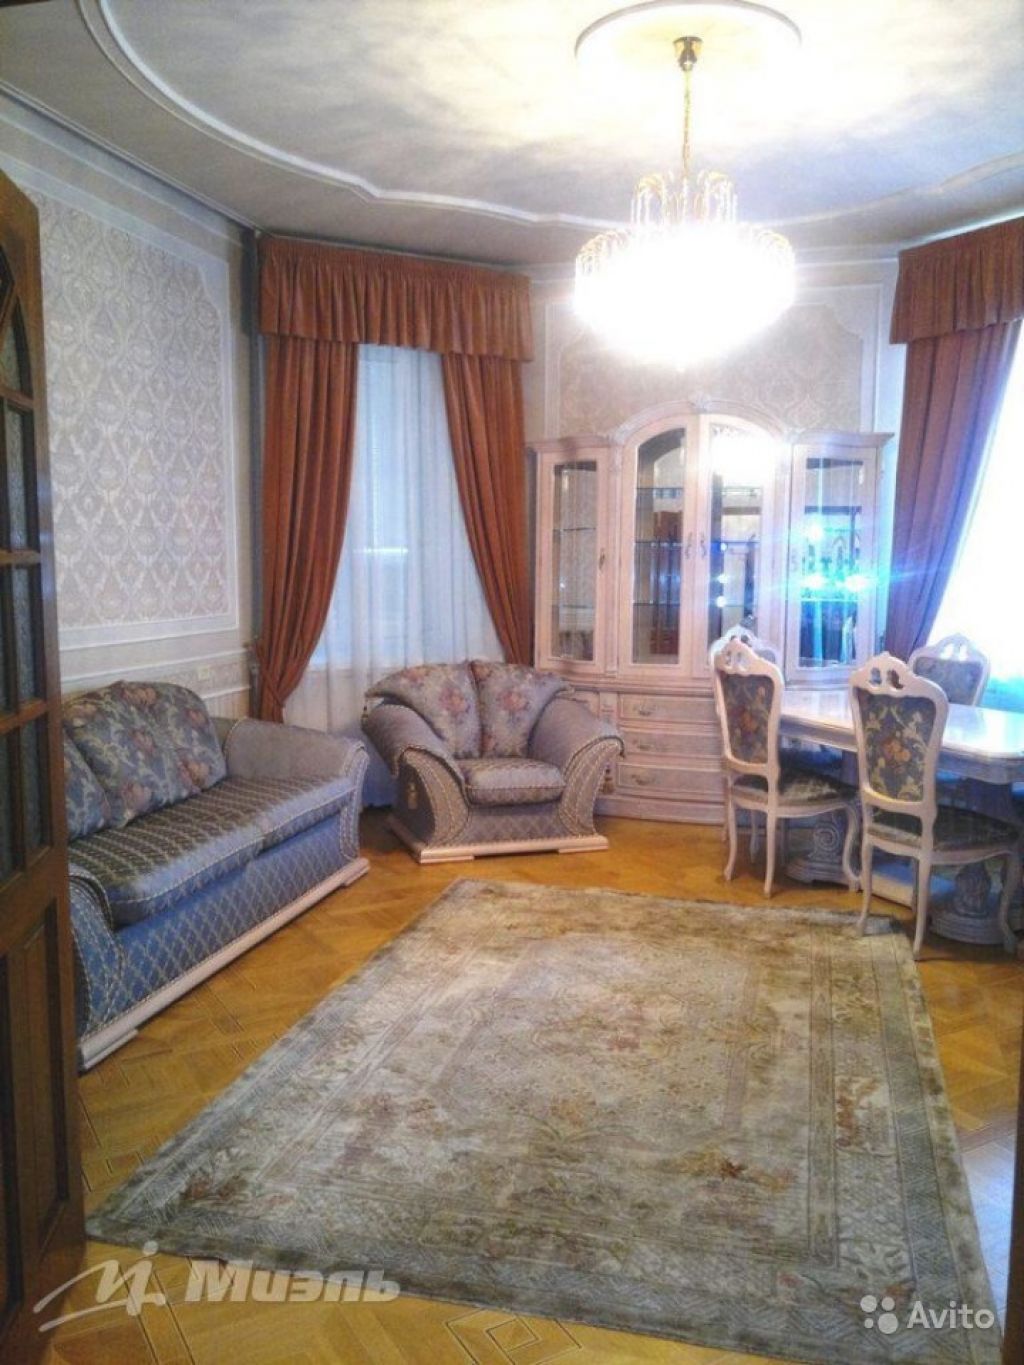 Сдам квартиру 4-к квартира 120 м² на 7 этаже 12-этажного кирпичного дома в Москве. Фото 1